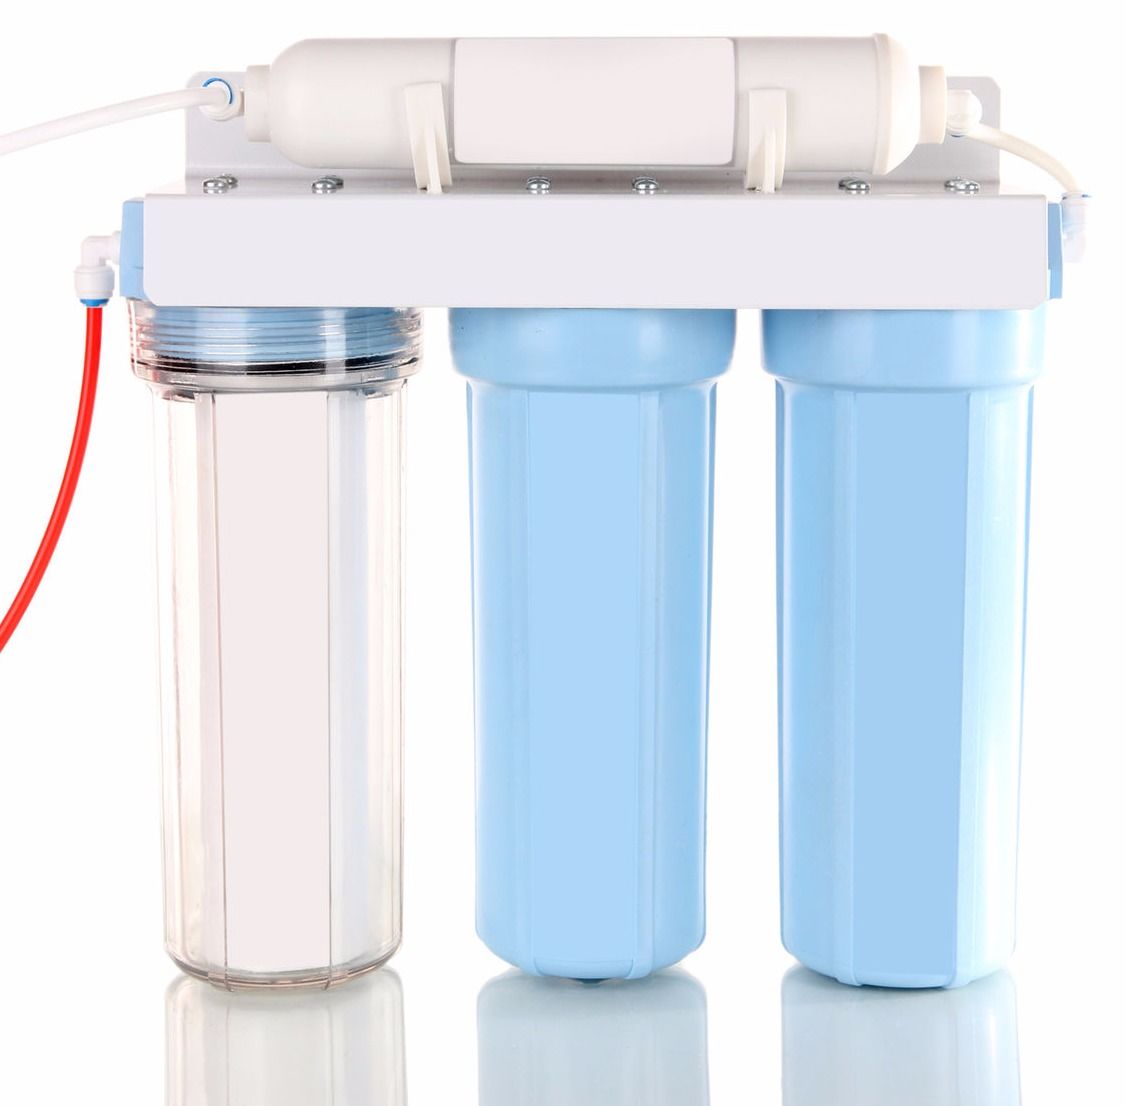 Фильтры для очистки воды от извести. Проточный фильтр для воды. Фильтр для воды с индикатором загрязненности.